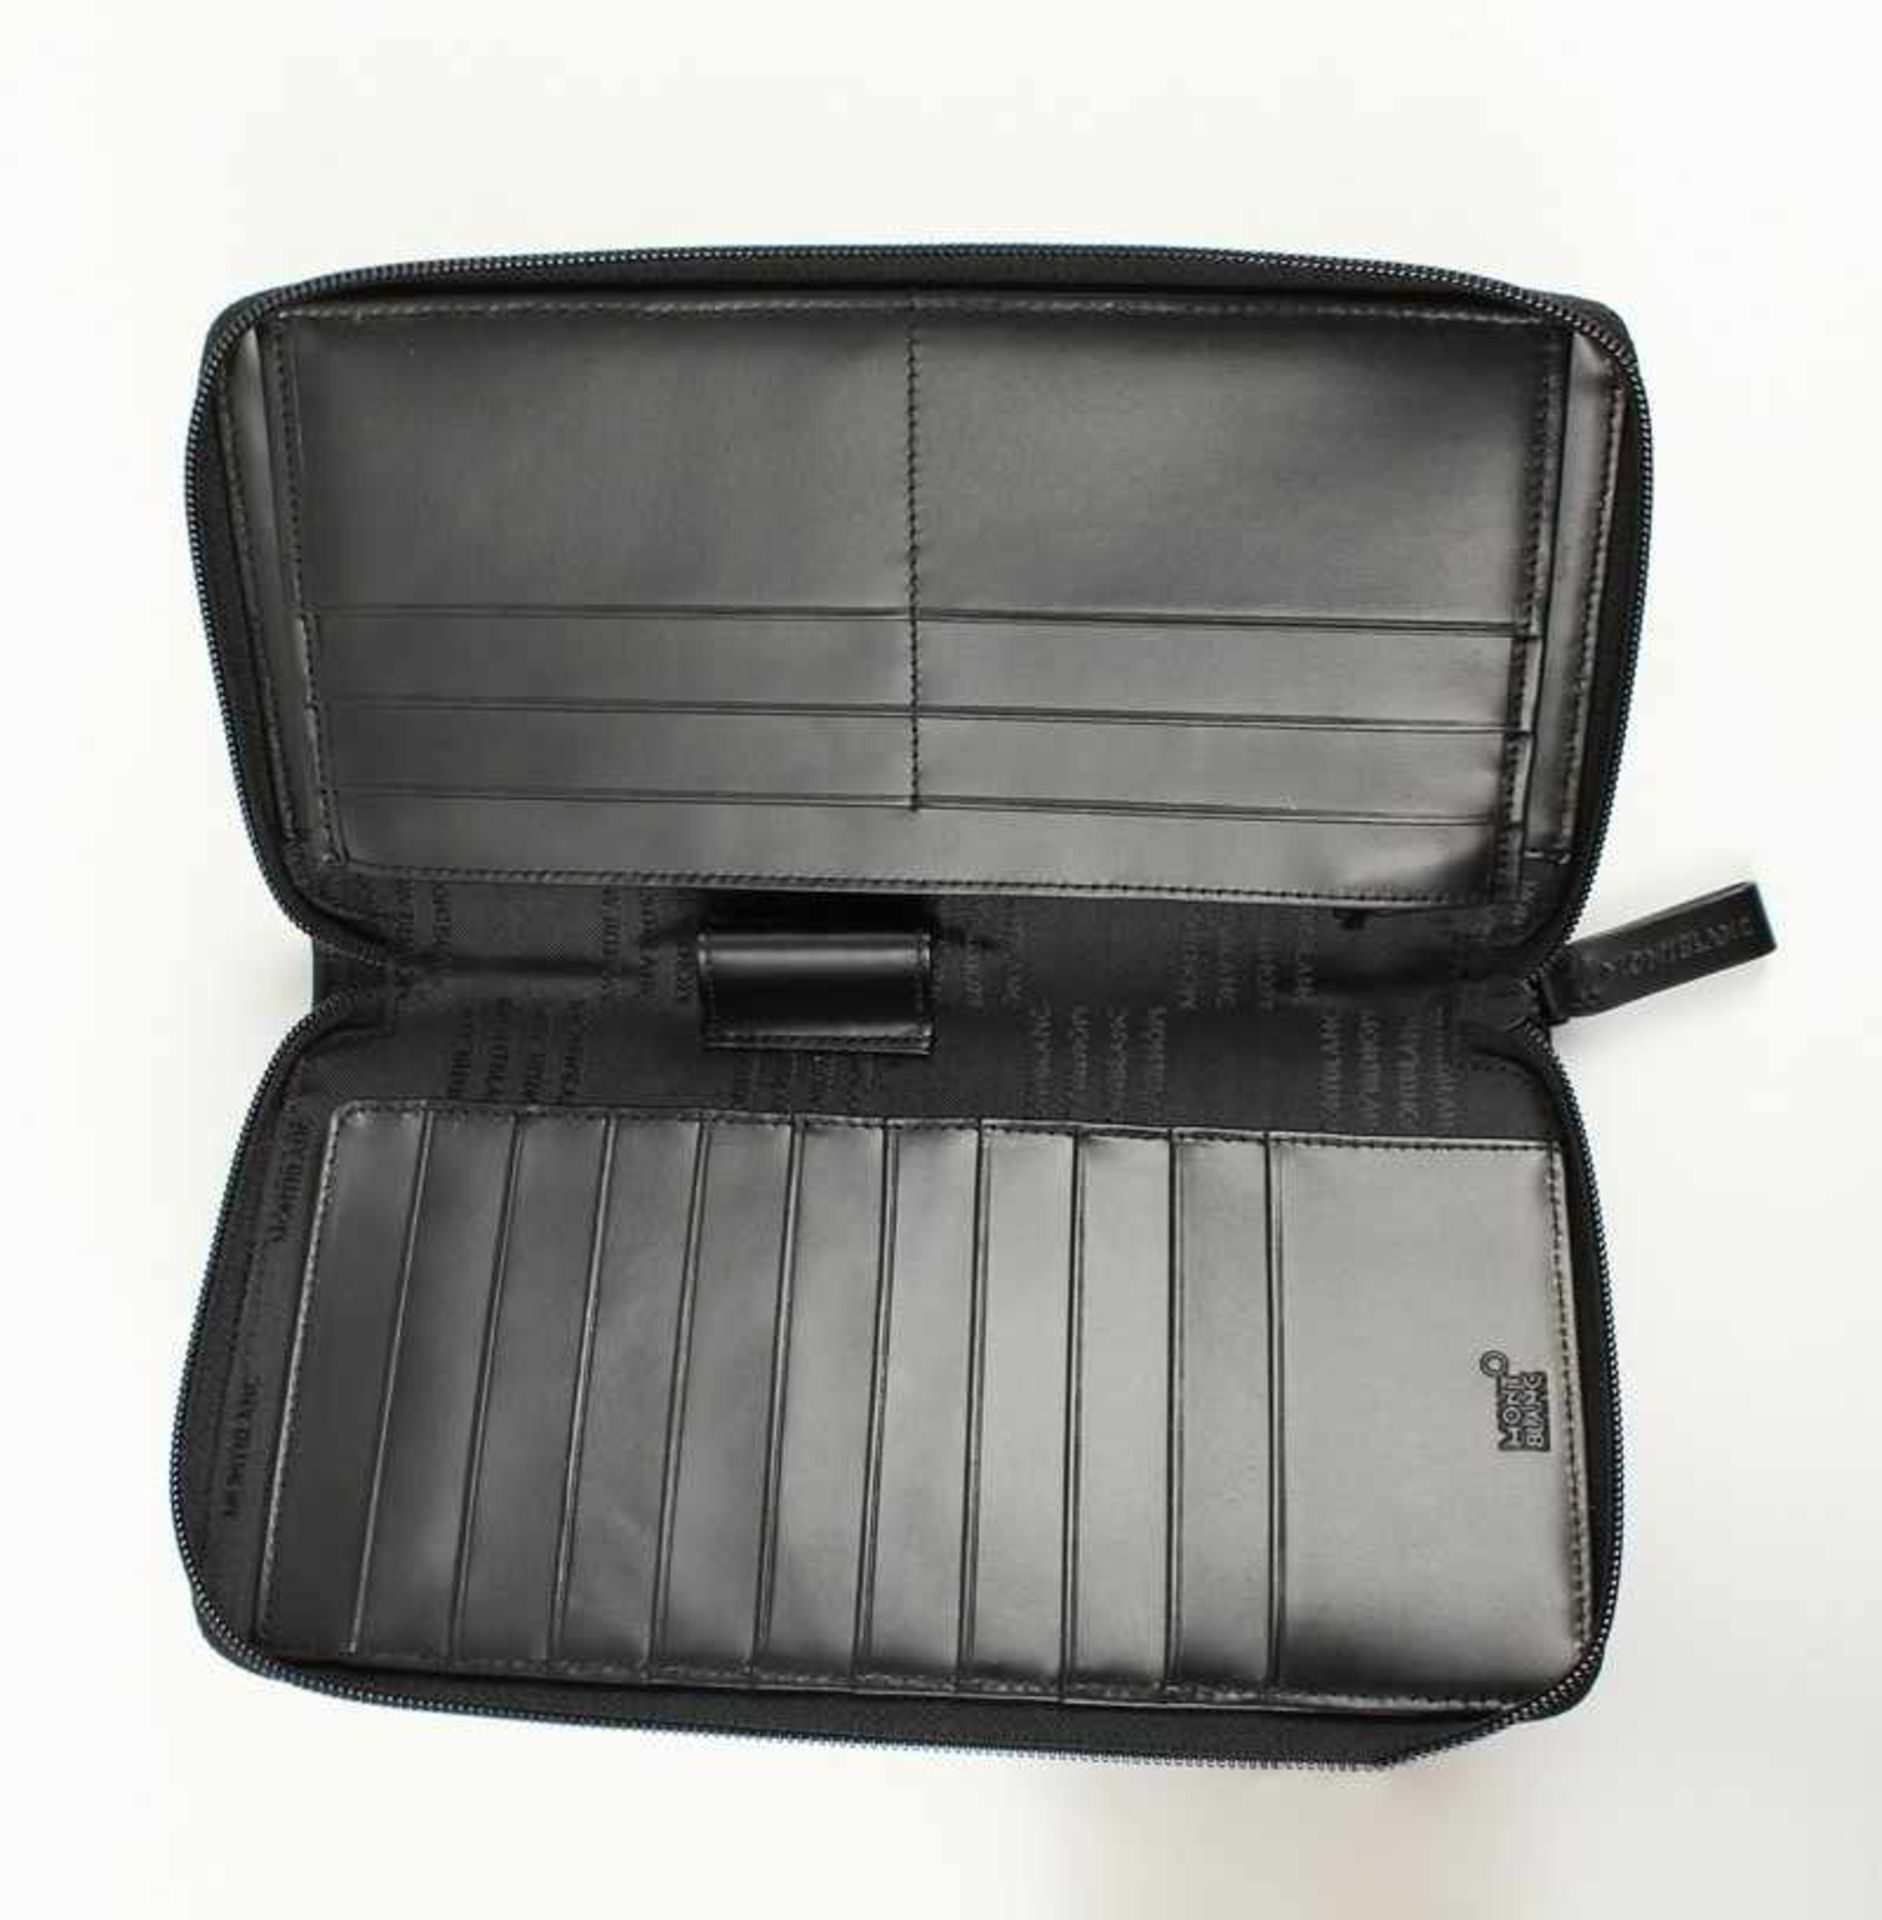 Montblanc - Reisebrieftasche exklusive große Brieftasche, schwarzes Leder & Nylon, Reißverschluss,